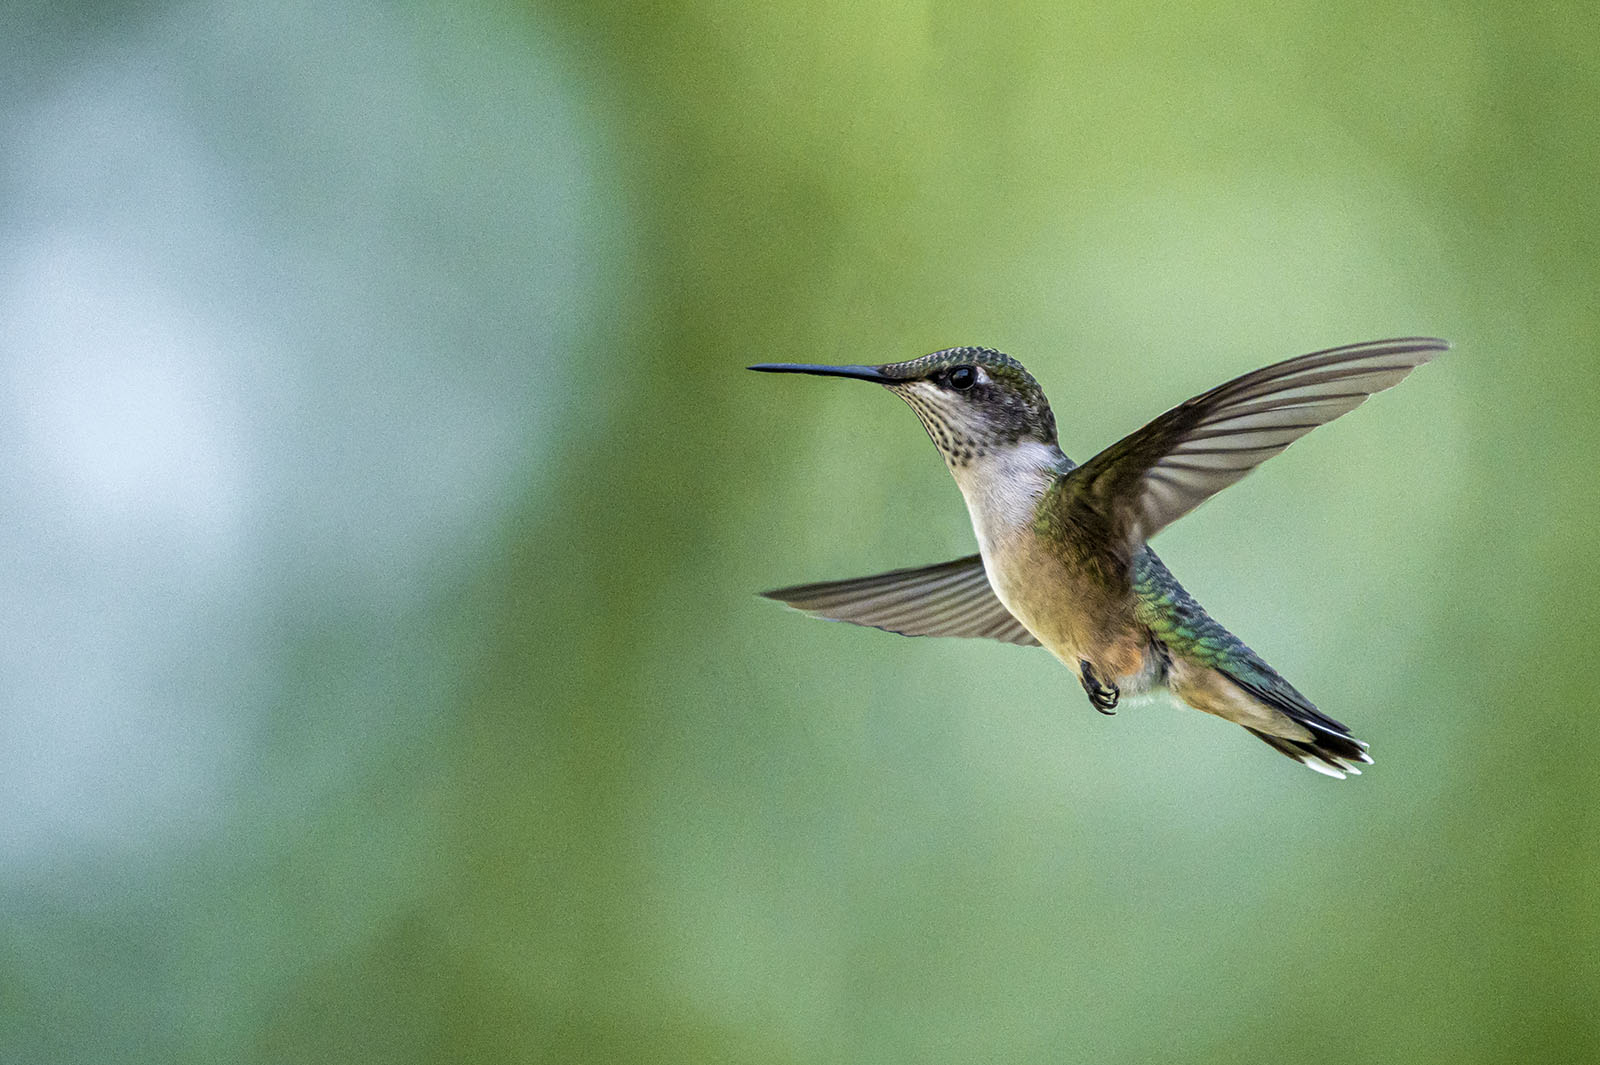 A hummingbird is caught mid-flight.